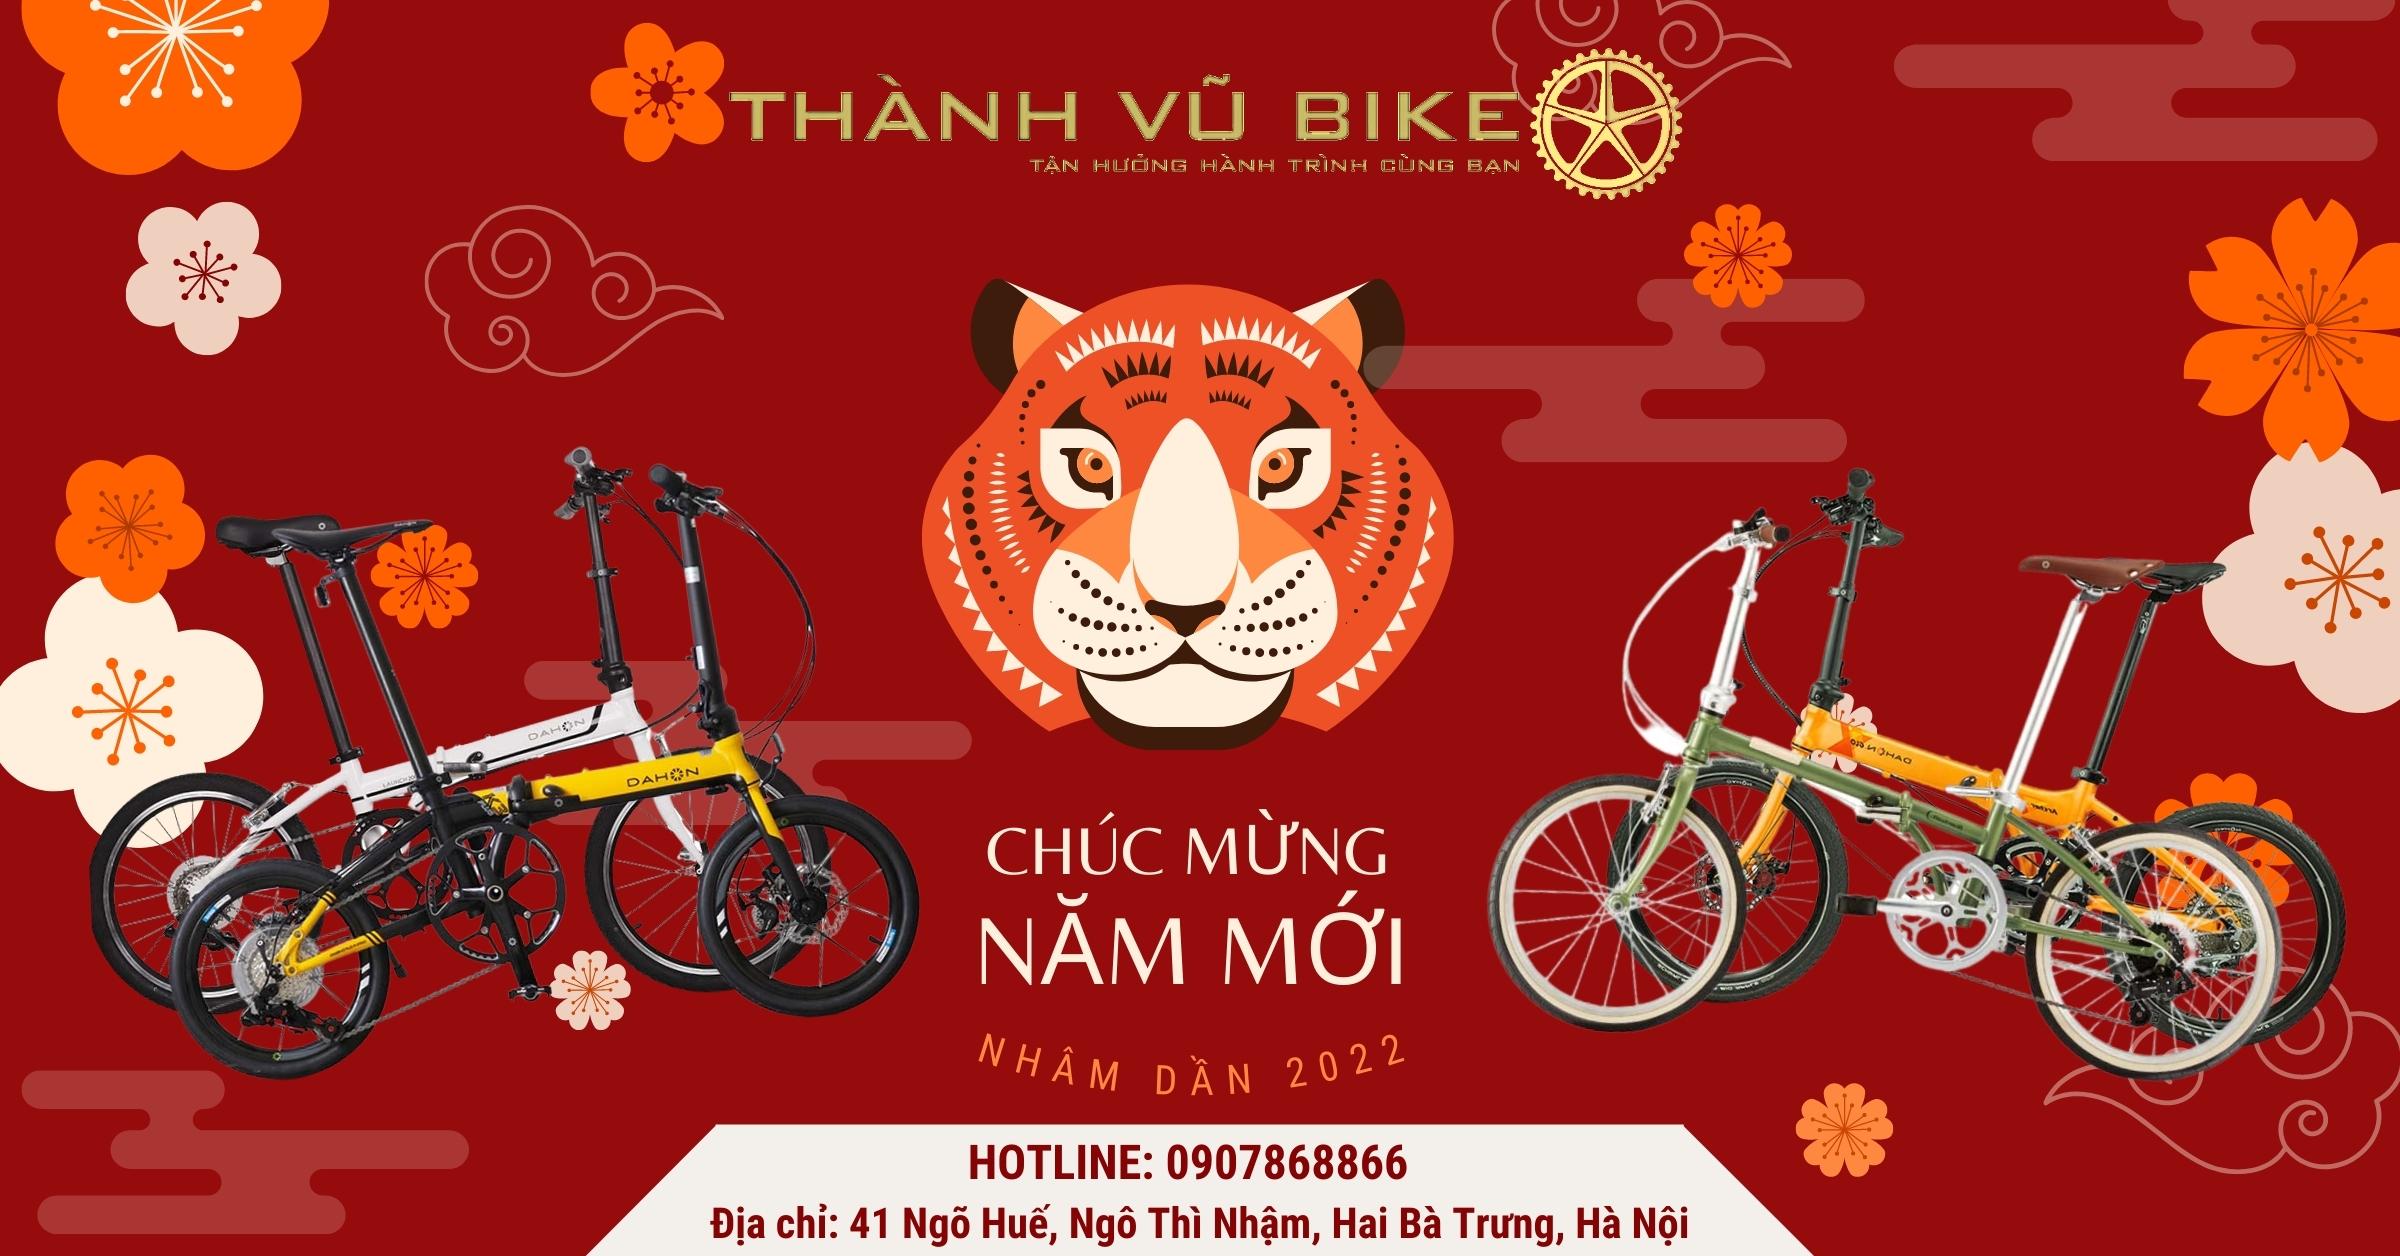 Thành Vũ Bike - Banner Tết 2022